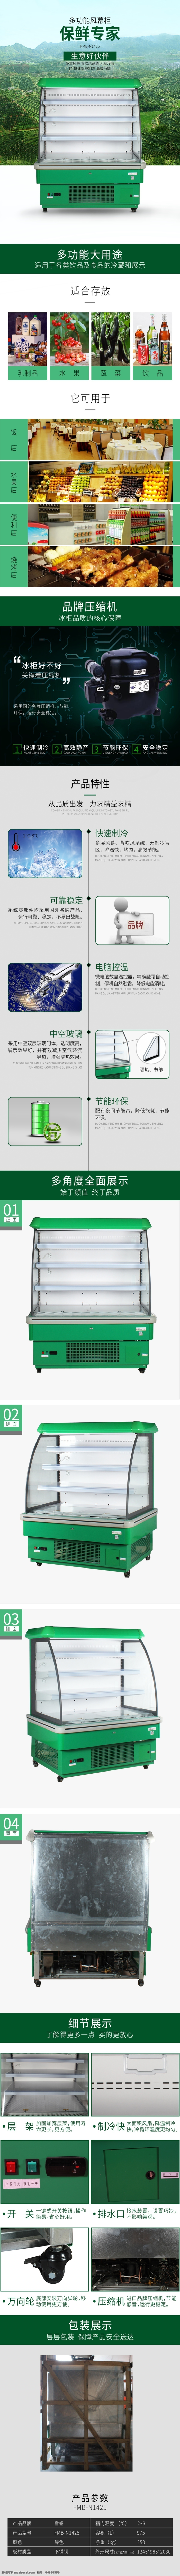 冰柜 电器 详情 页 模板 电商淘宝 冰柜描述 详情页模板